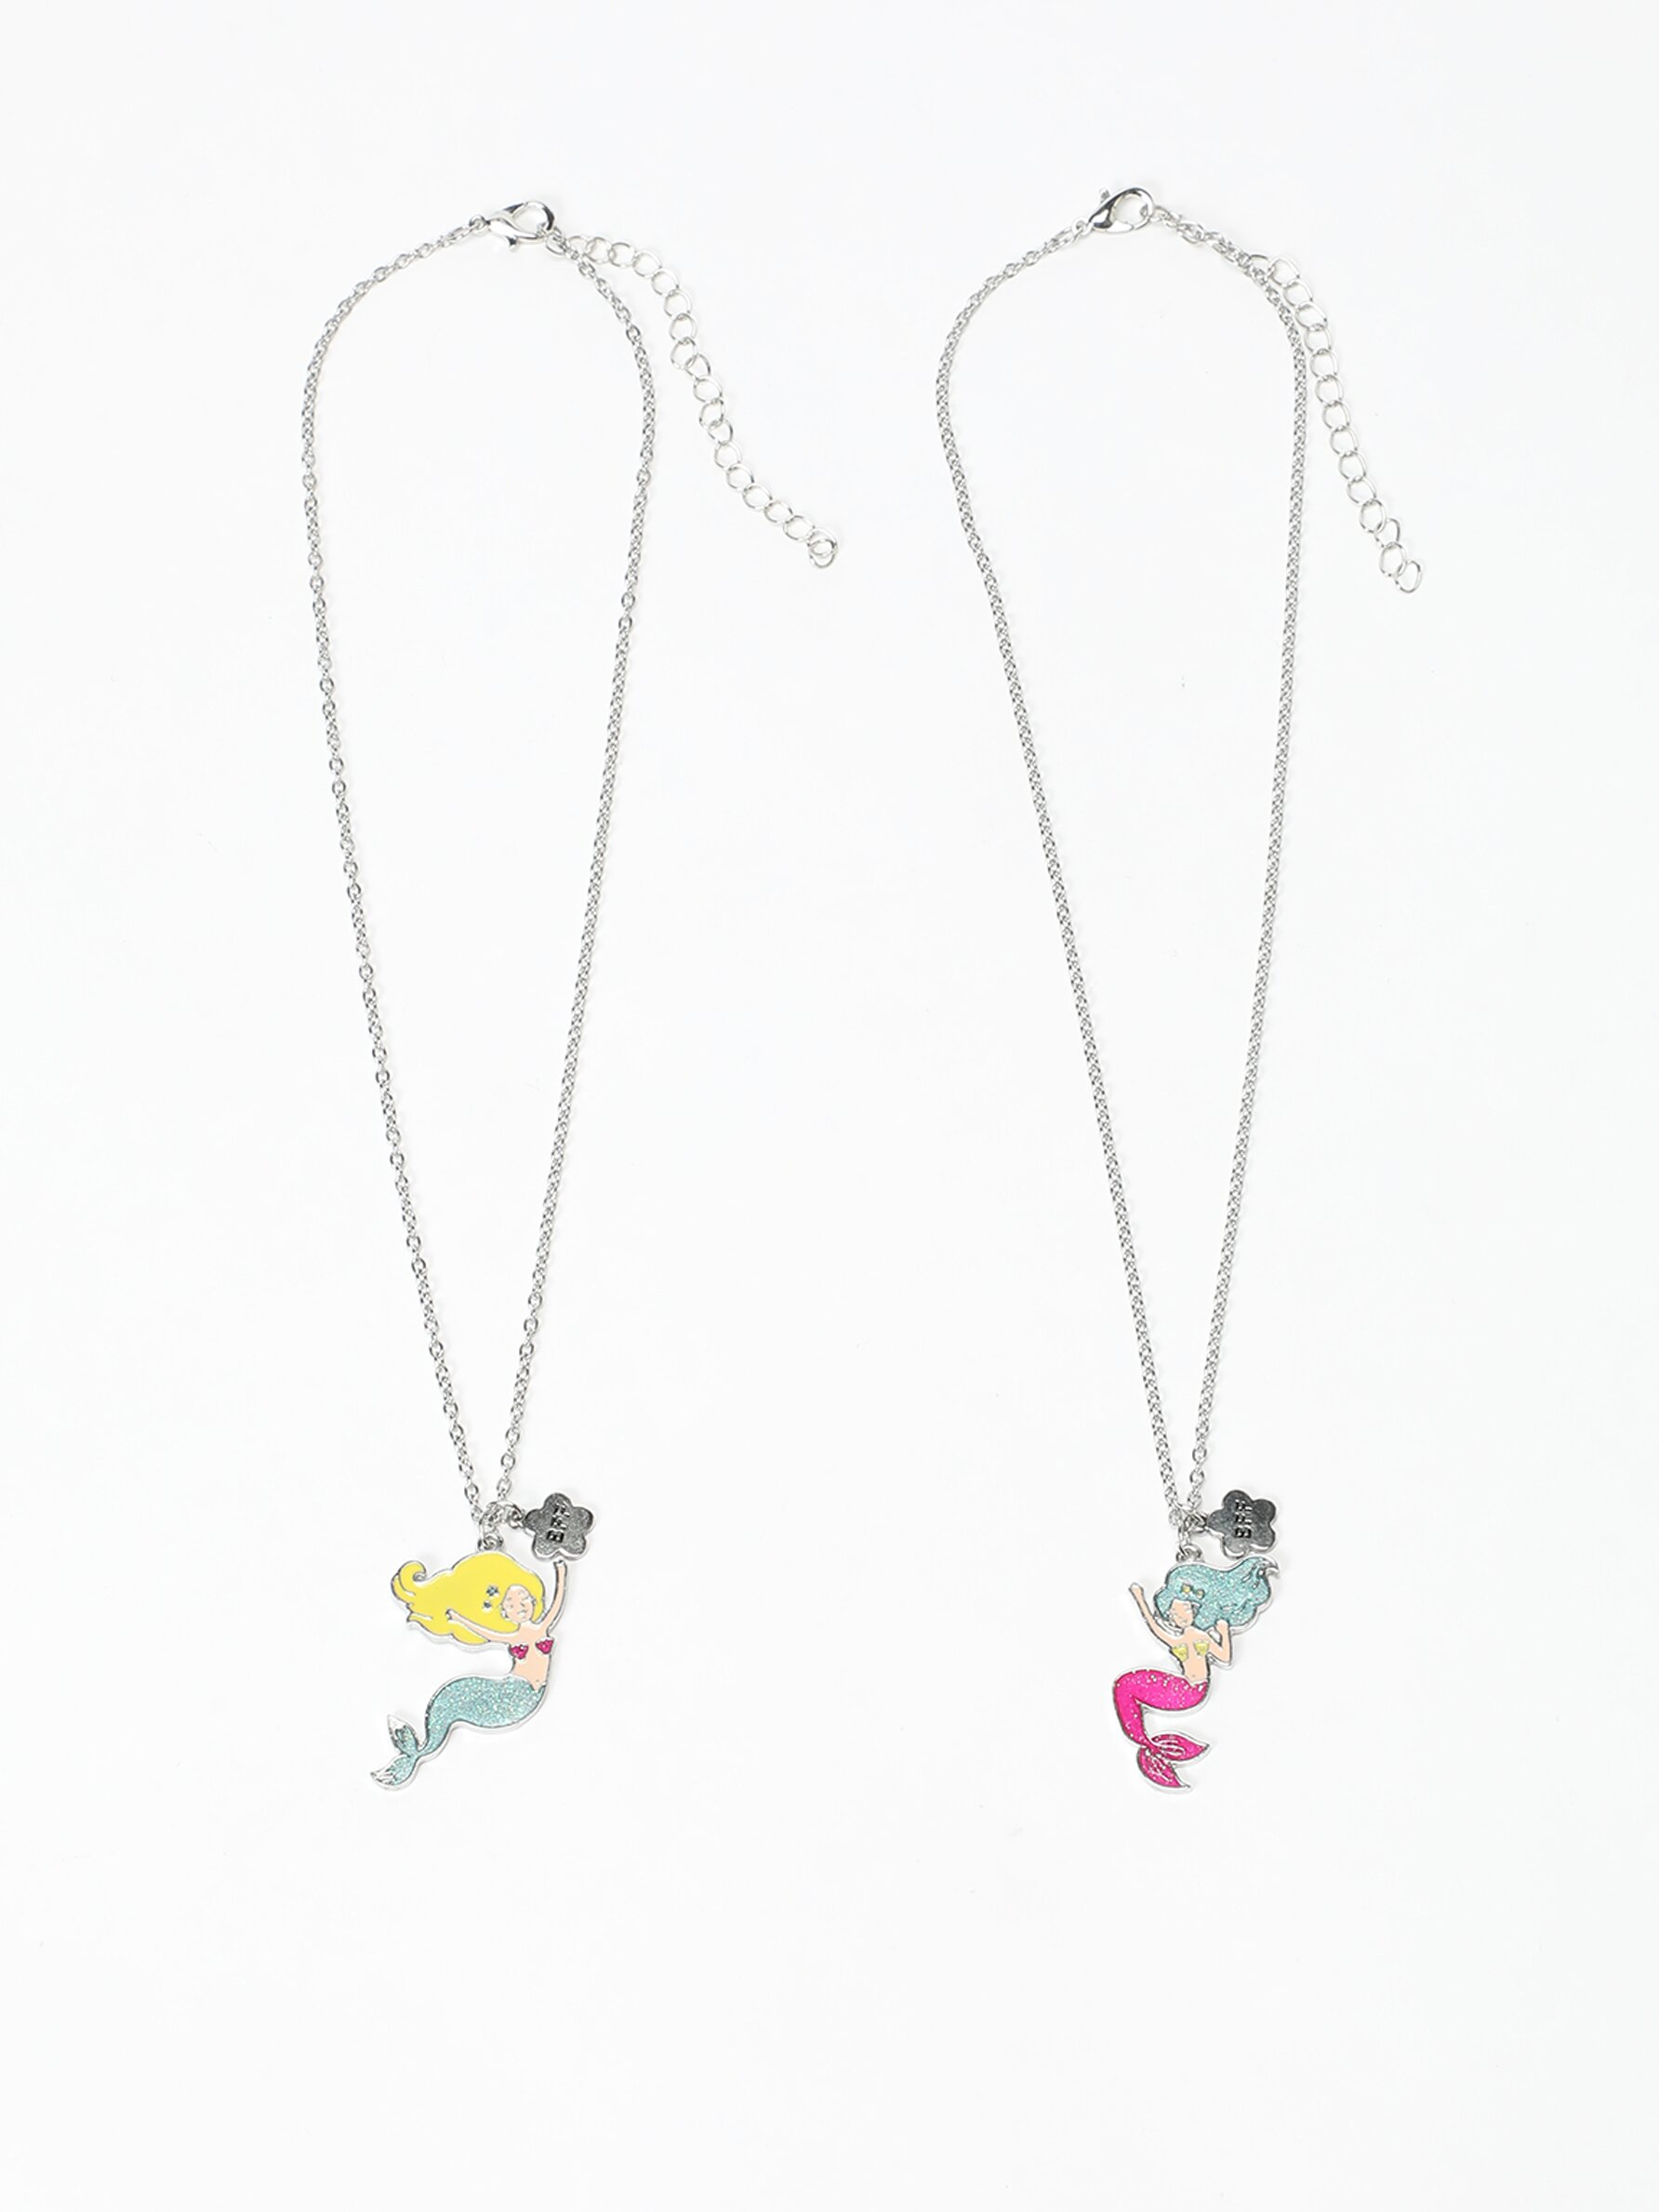 Best Friends Bright Tie Dye Split Heart Pendant Necklaces - 2 Pack |  Claire's US